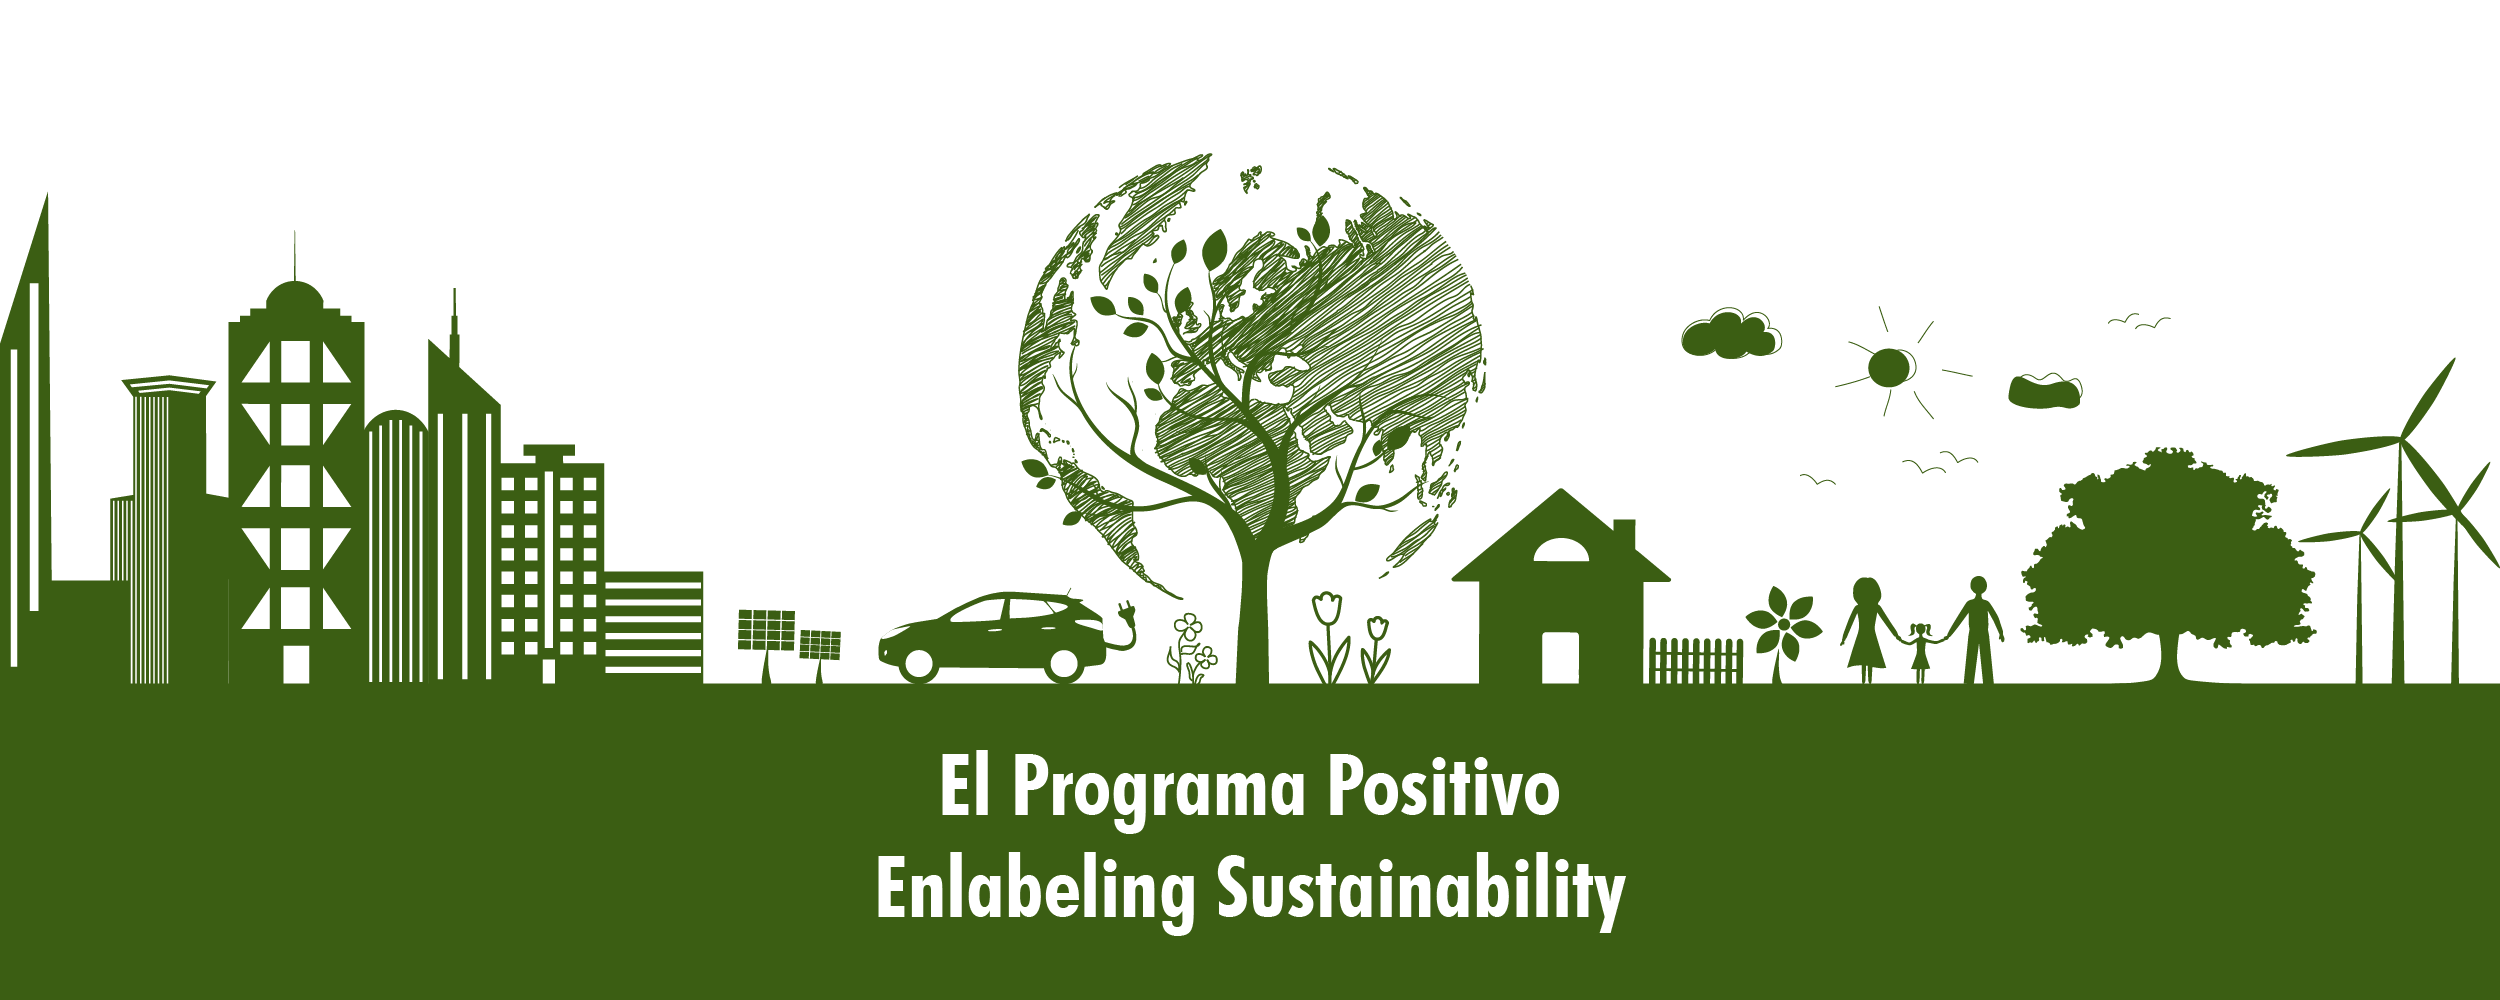 banner-sustentabilidad